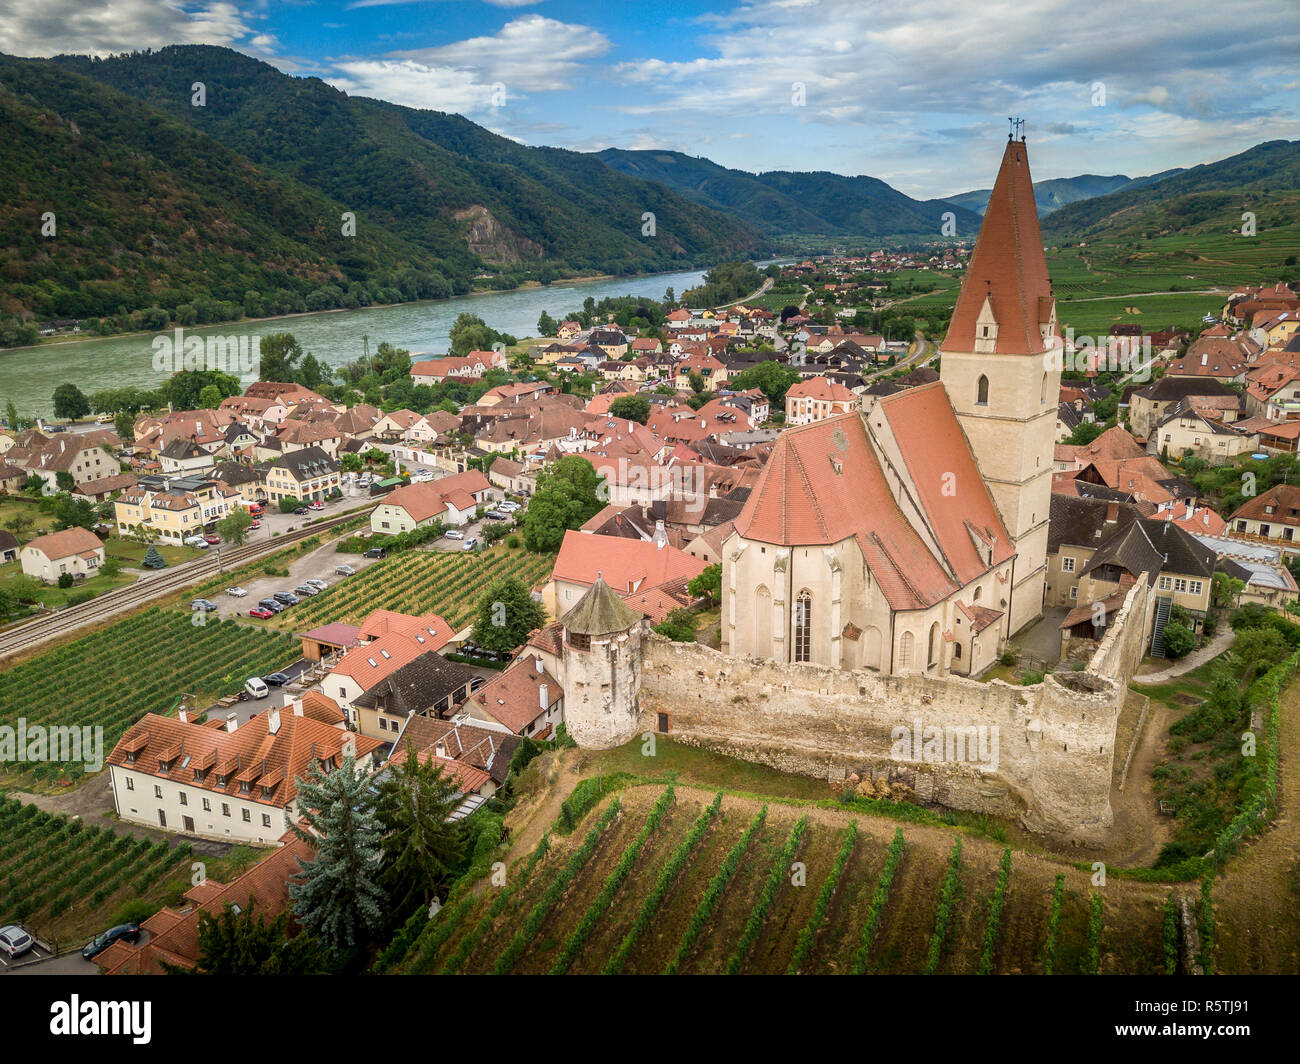 Vista aerea di Weissenkirchen splendido villaggio con cantine della regione di Wachau lungo il Danubio in Austria con fortificata medievale Cattolica Romana Foto Stock